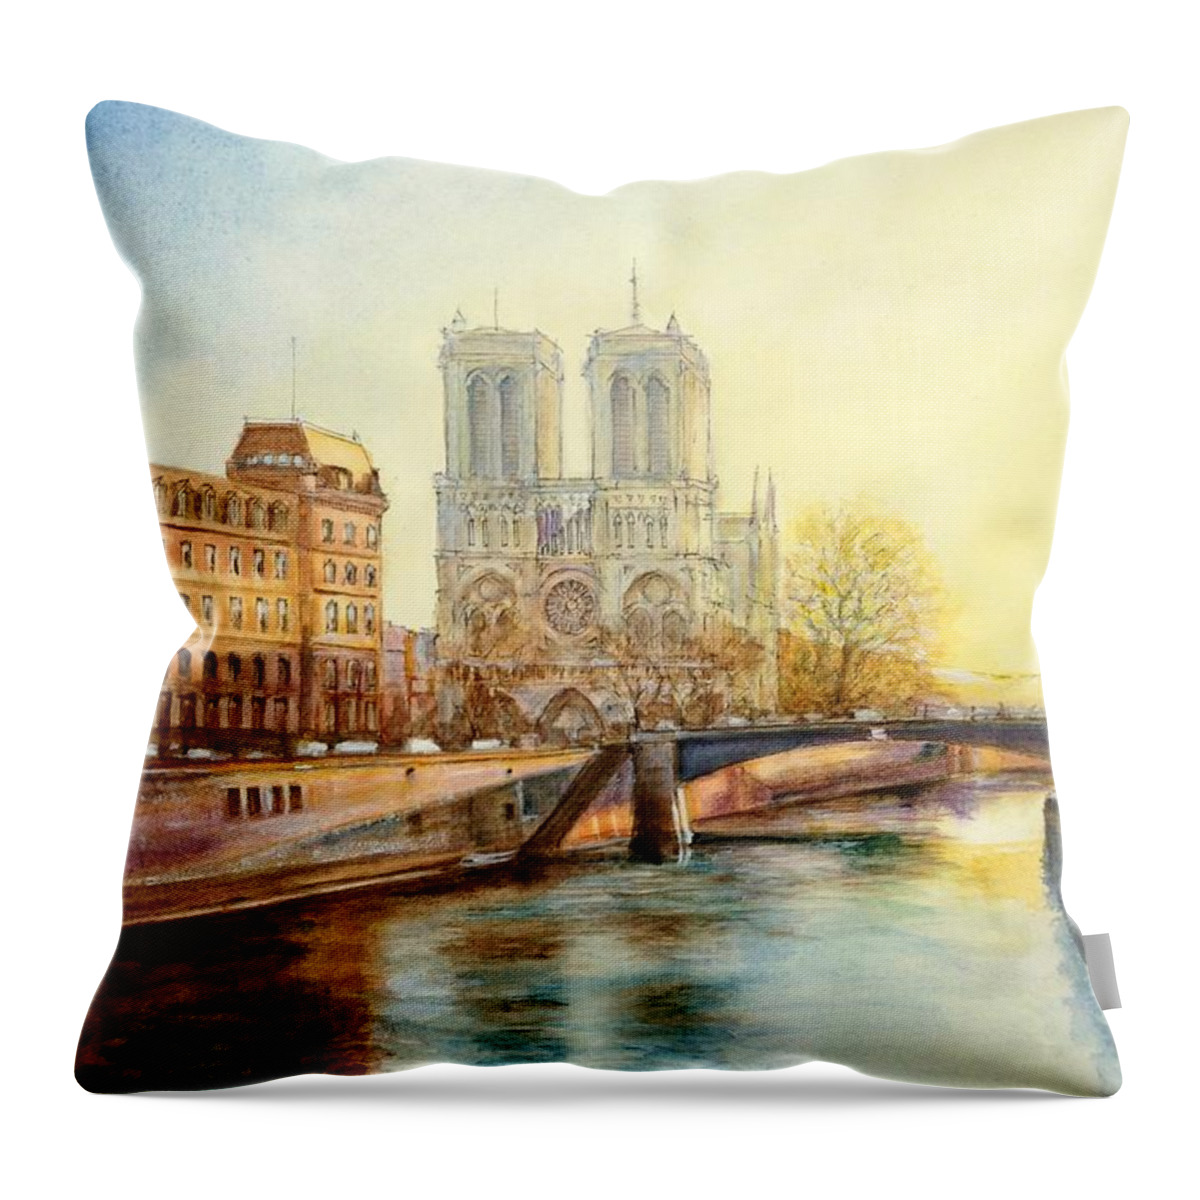 Paris Throw Pillow featuring the painting Paris Couche de Soleil by Dai Wynn